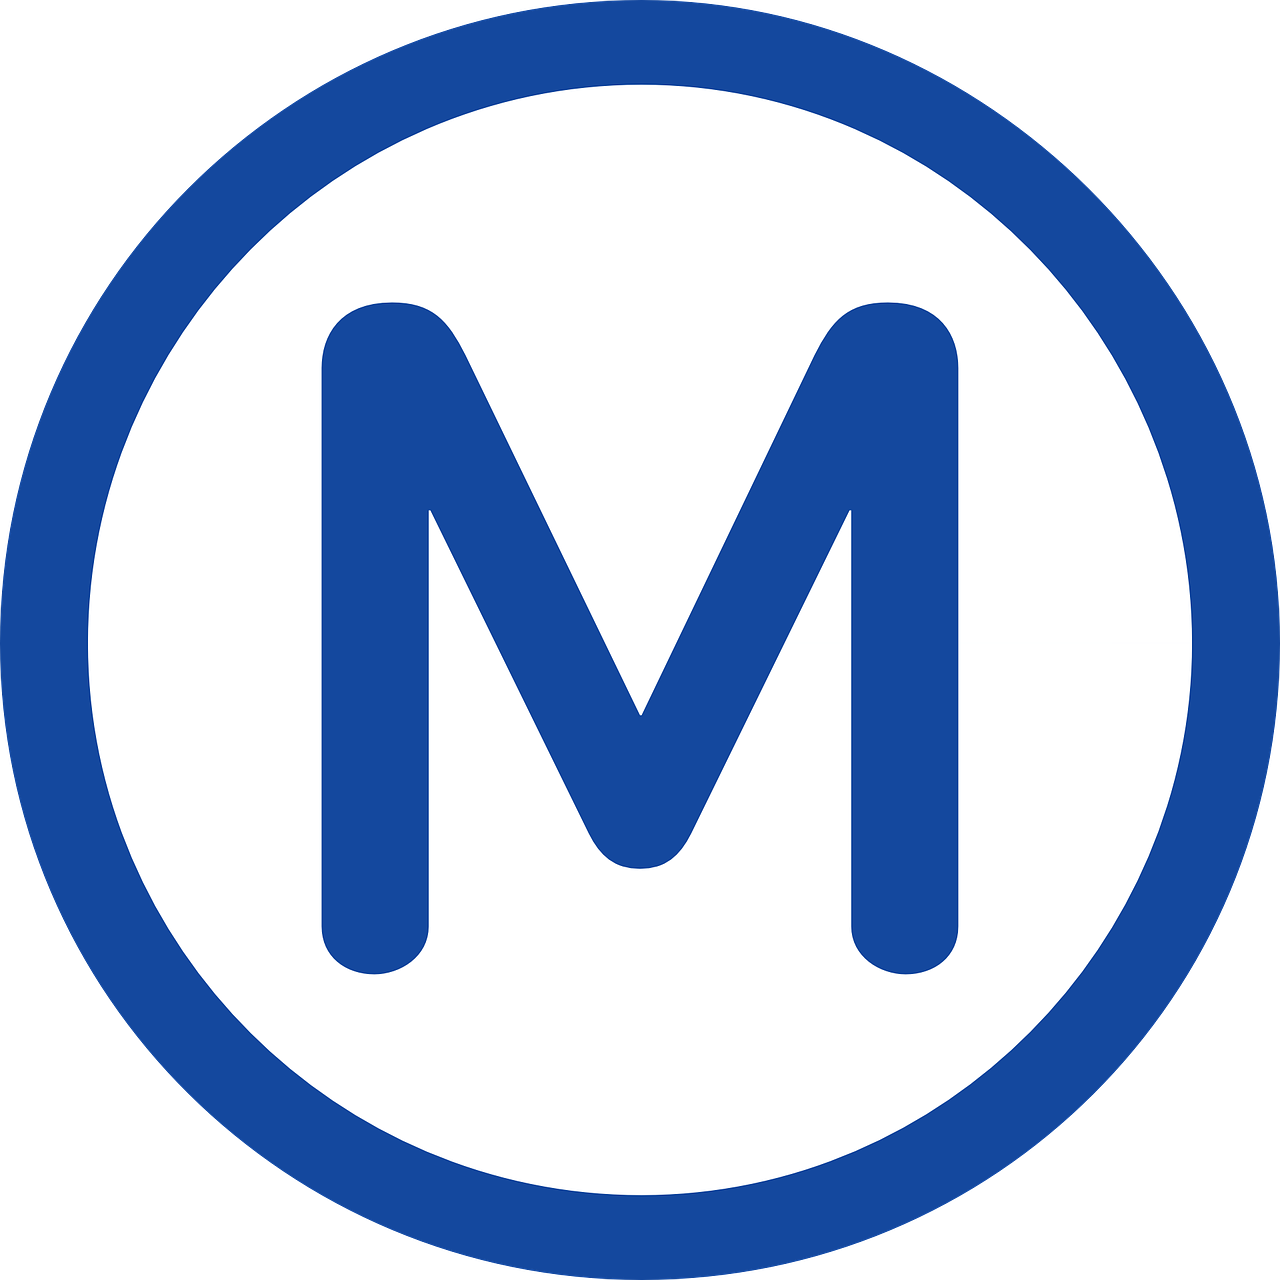 metro symbol icon free photo